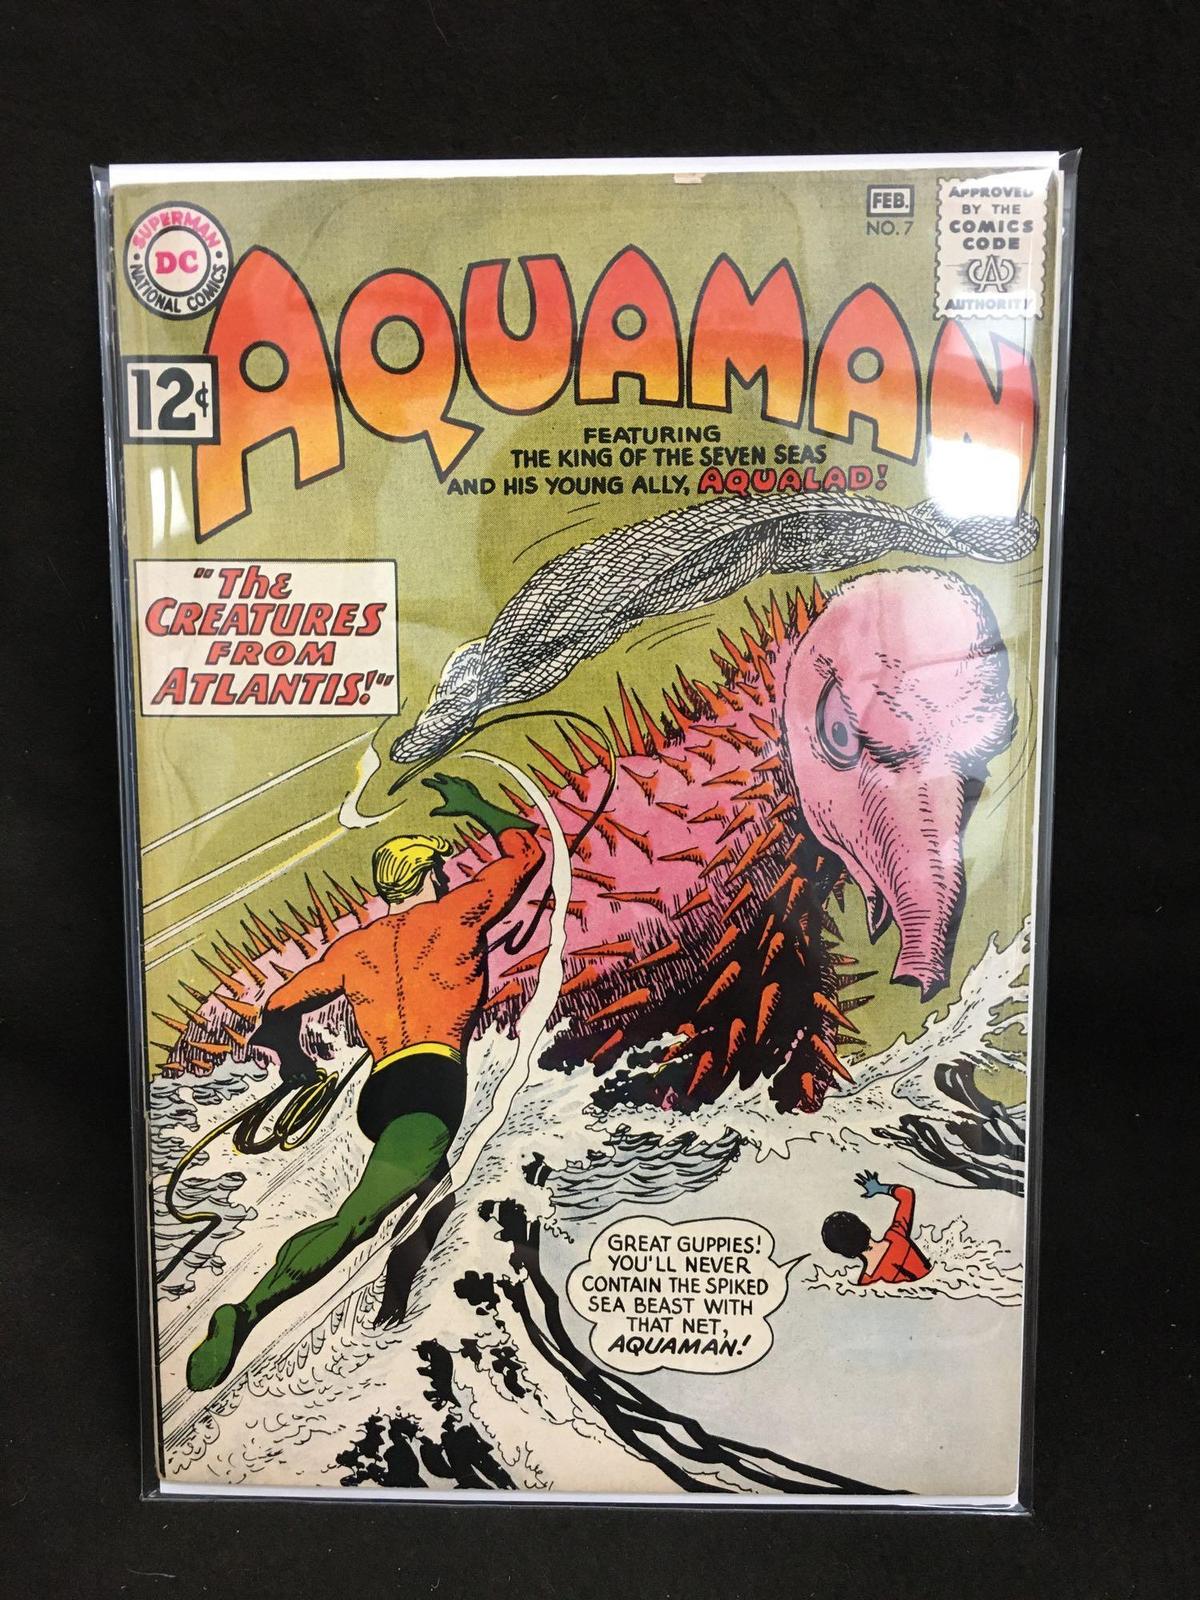 Aquaman #7 Vintage Comic Book - ATTIC FIND!